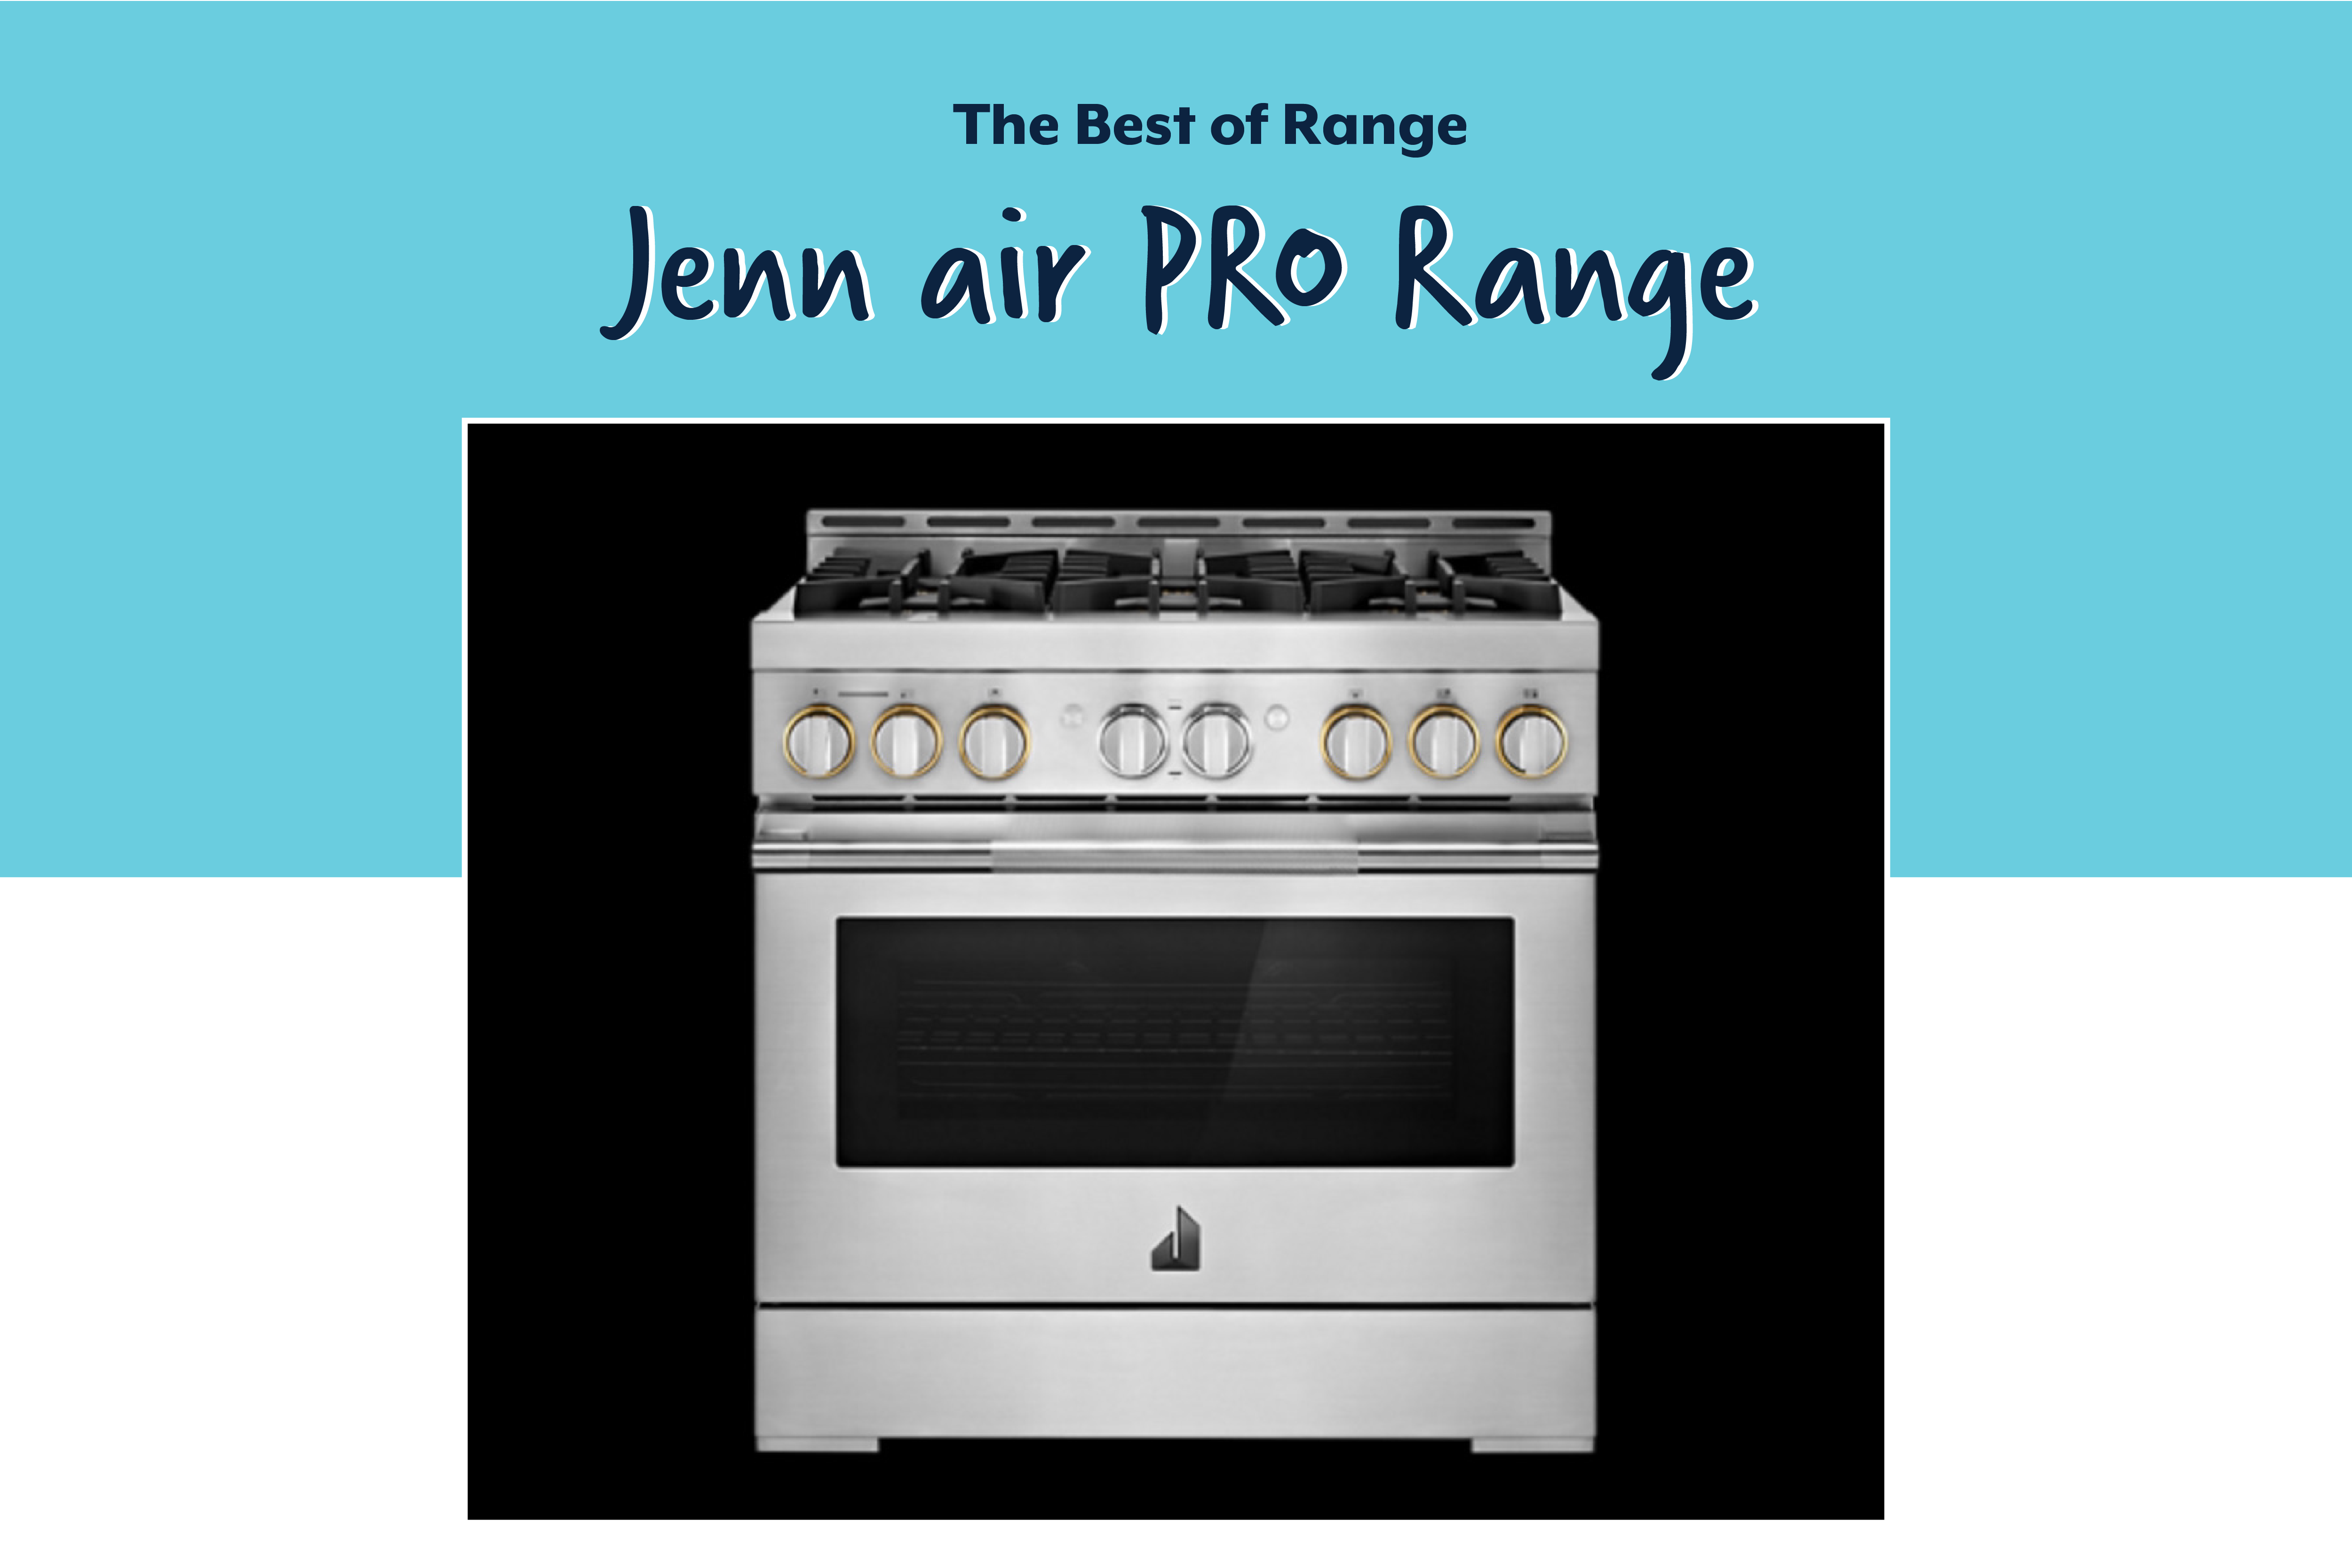 JennAir Pro Range